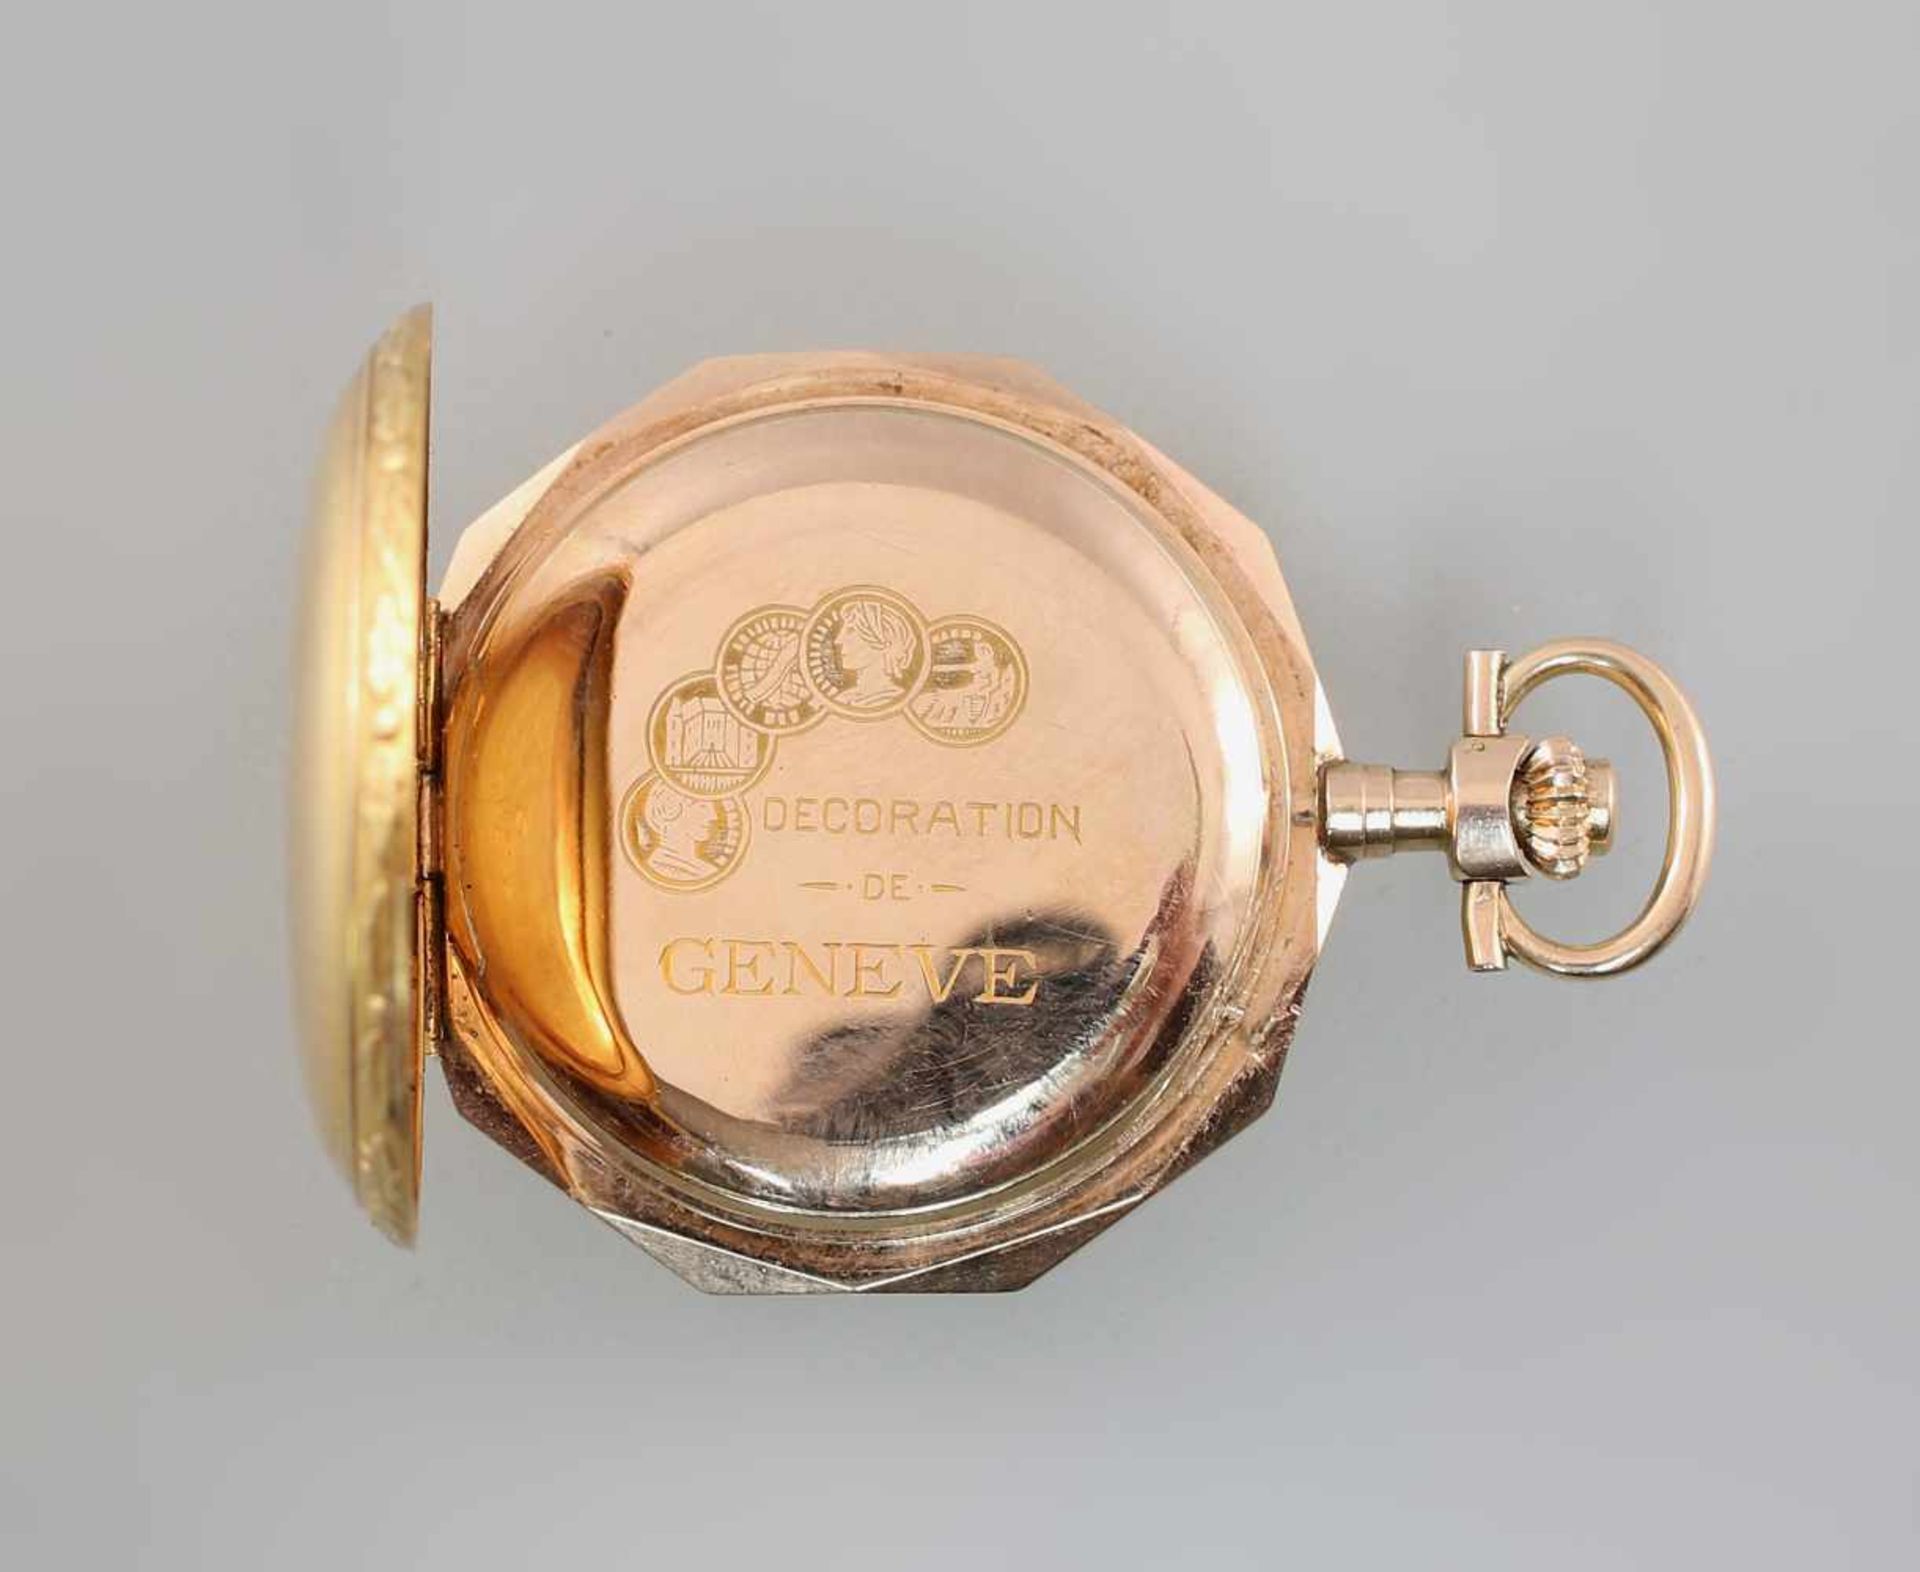 Goldene Savonette Damentaschenuhr Spätbiedermeierum 1880, 585er Gold, alle 3 Deckel gepunzt 14K - Image 4 of 5